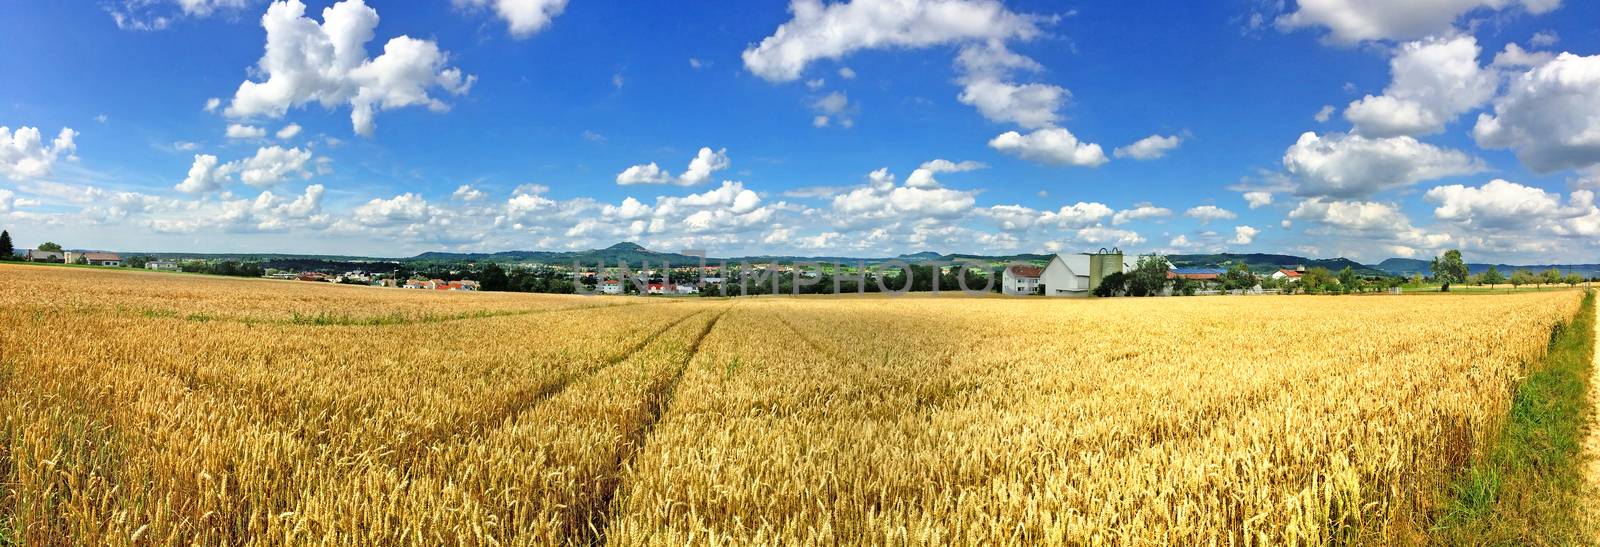 field of ripe rye with blue sky by Jochen